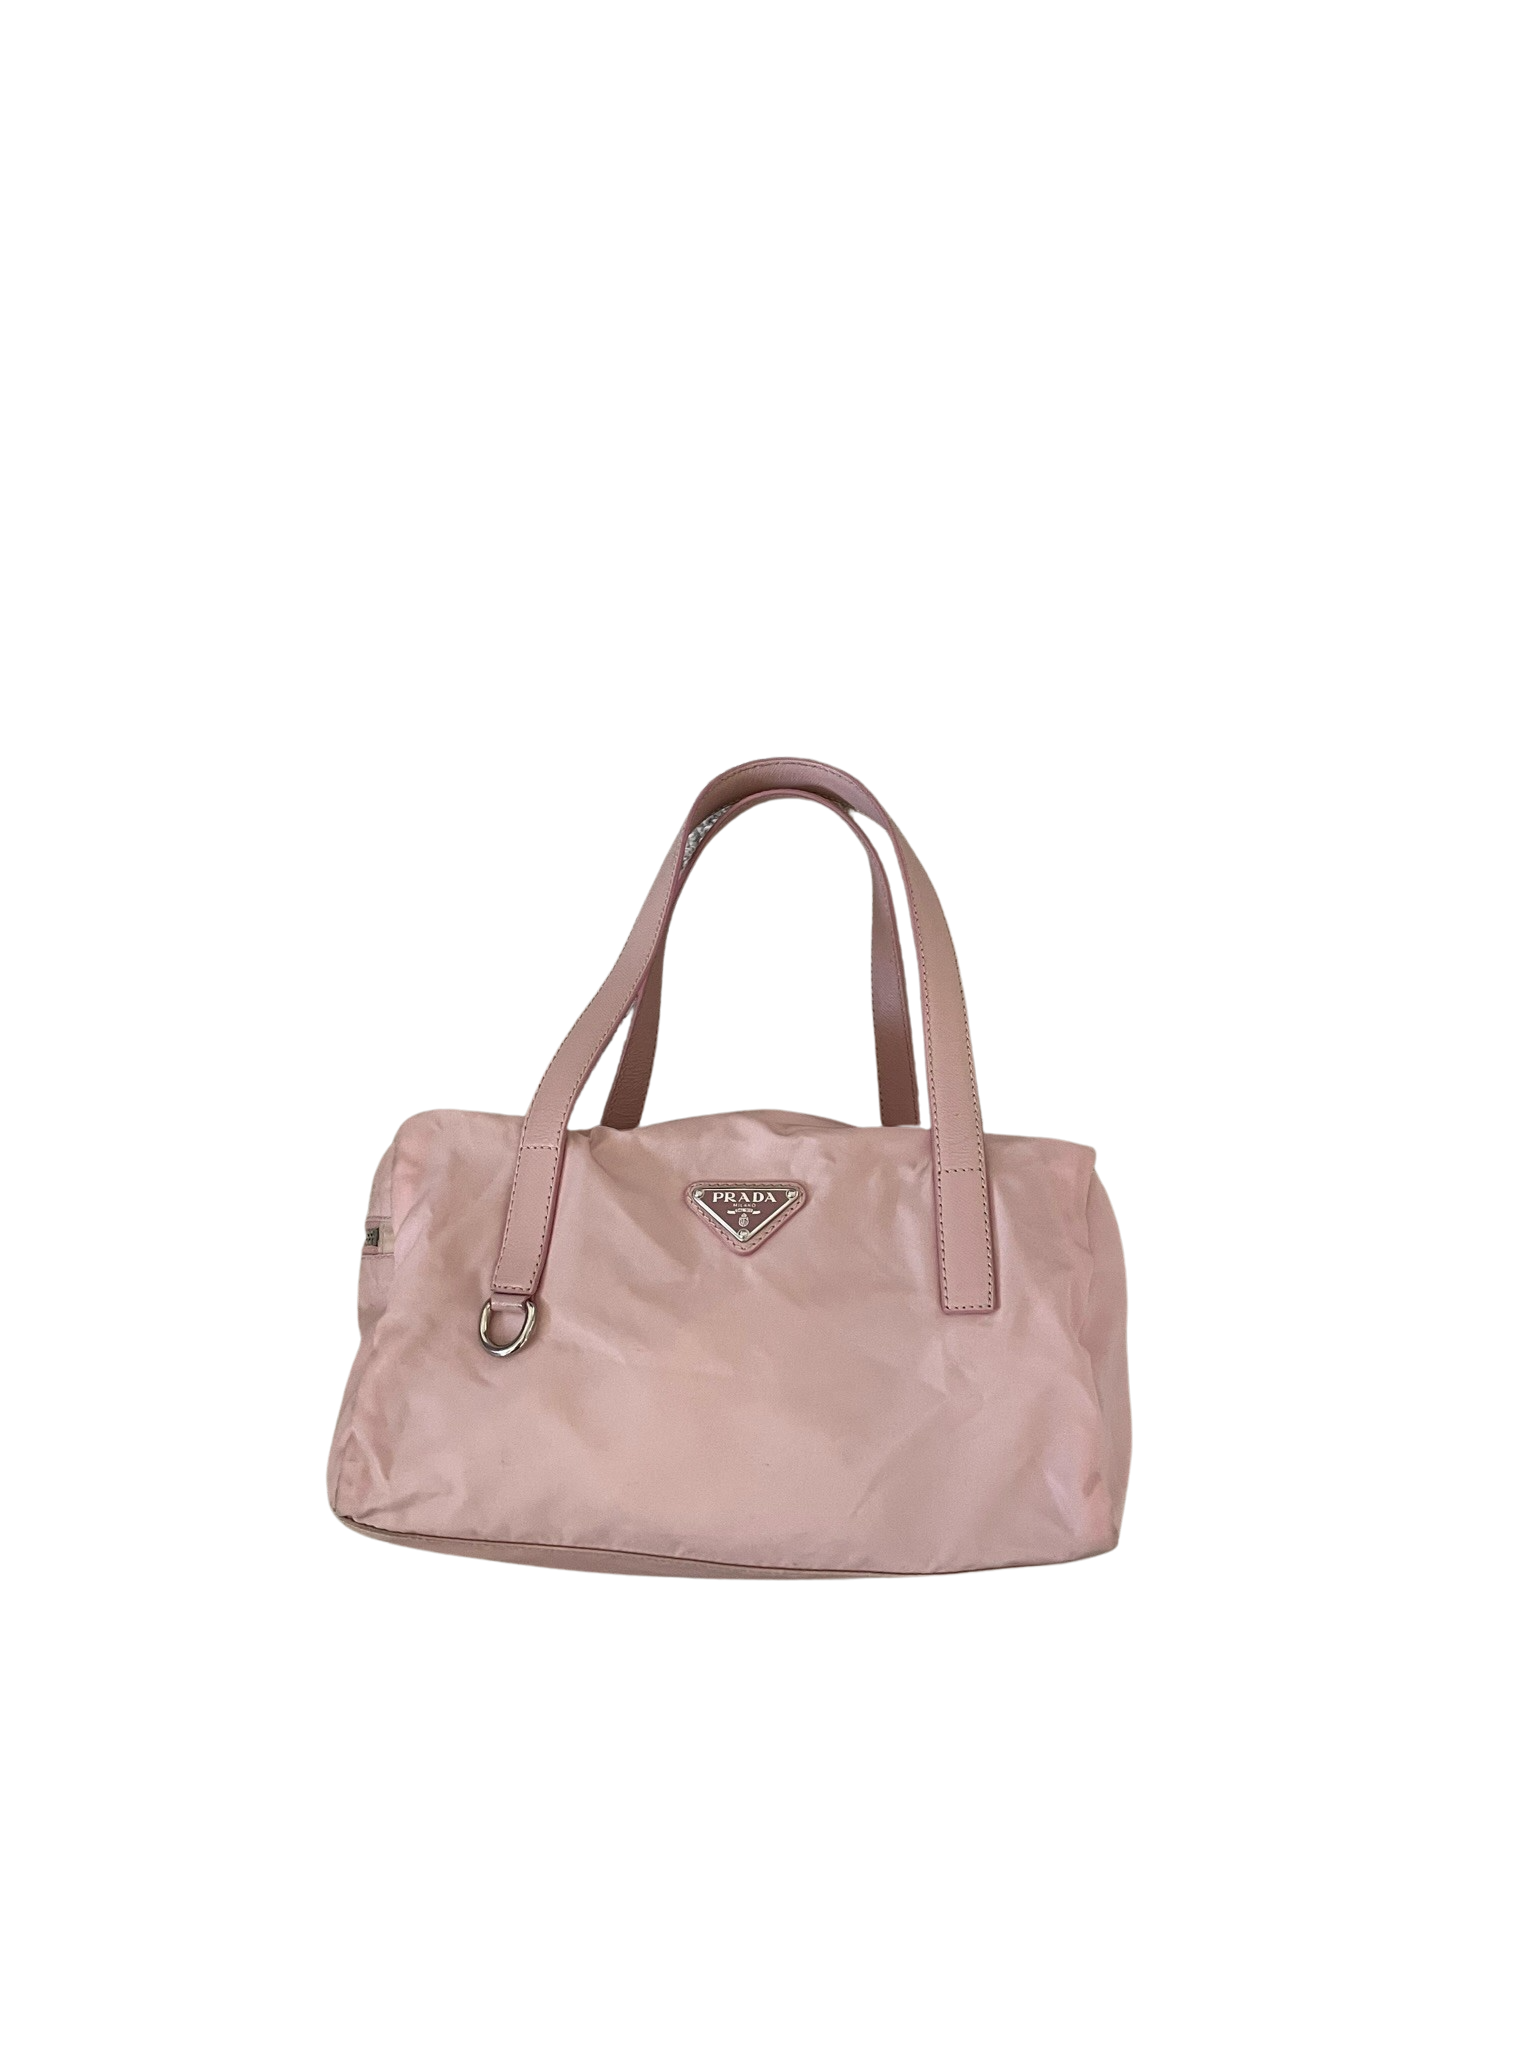 Prada - Authenticated Tessuto Handbag - Cloth Pink Plain for Women, Very Good Condition